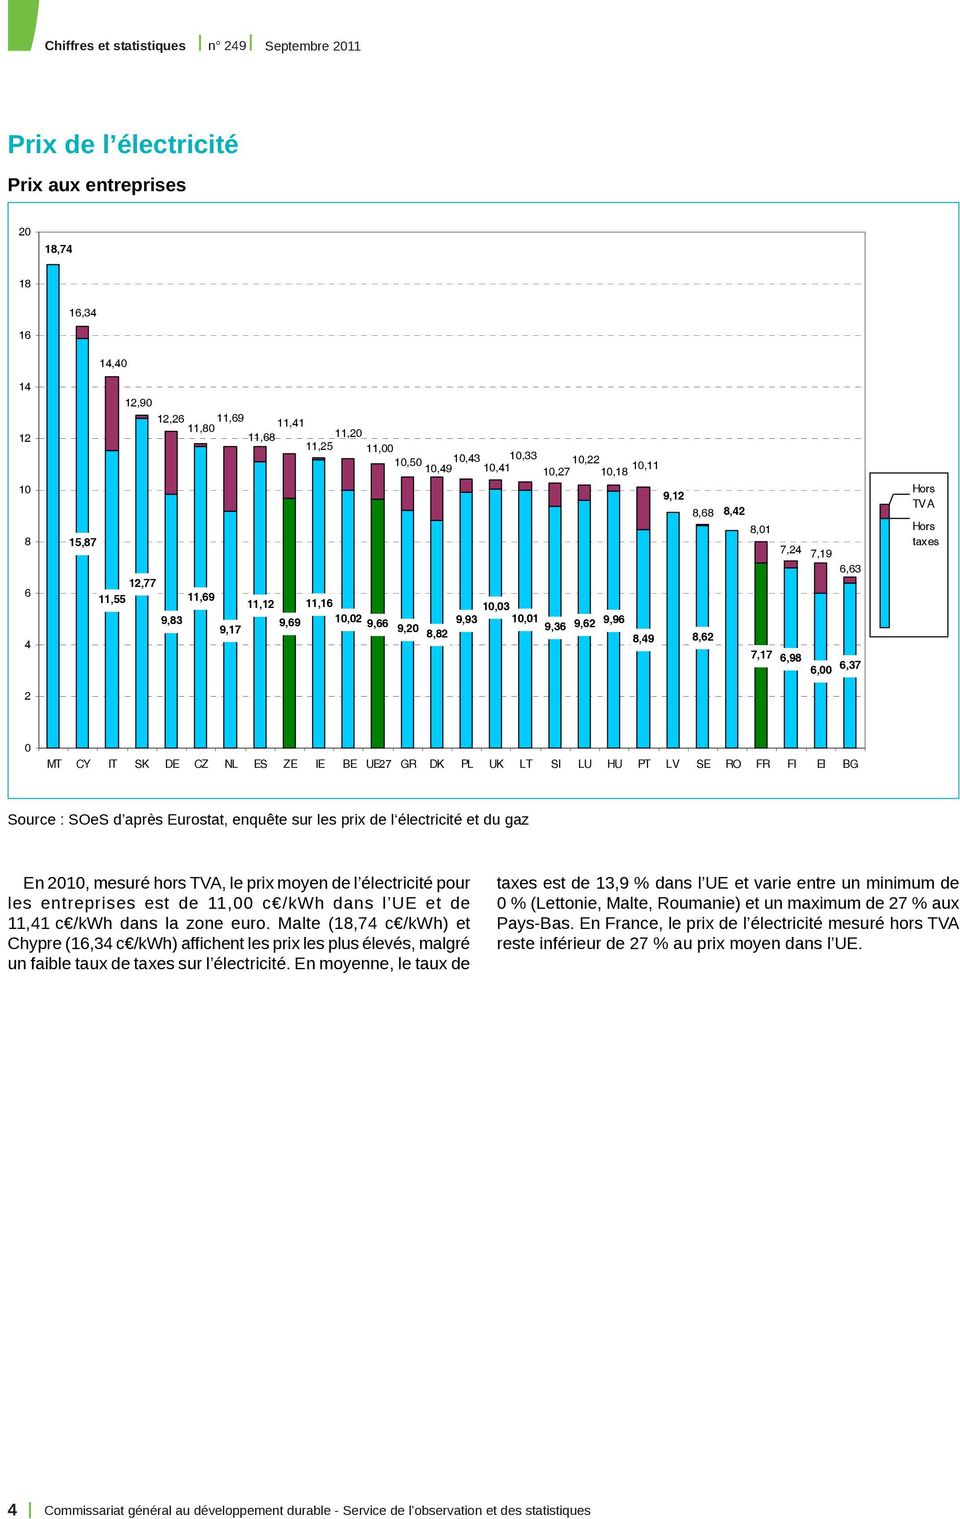 UK LU HU PT RO FI EI En 2010, mesuré hors TVA, le prix moyen de l électricité pour les entreprises est de 11,00 c /kwh dans l UE et de 11,41 c /kwh dans la zone euro.